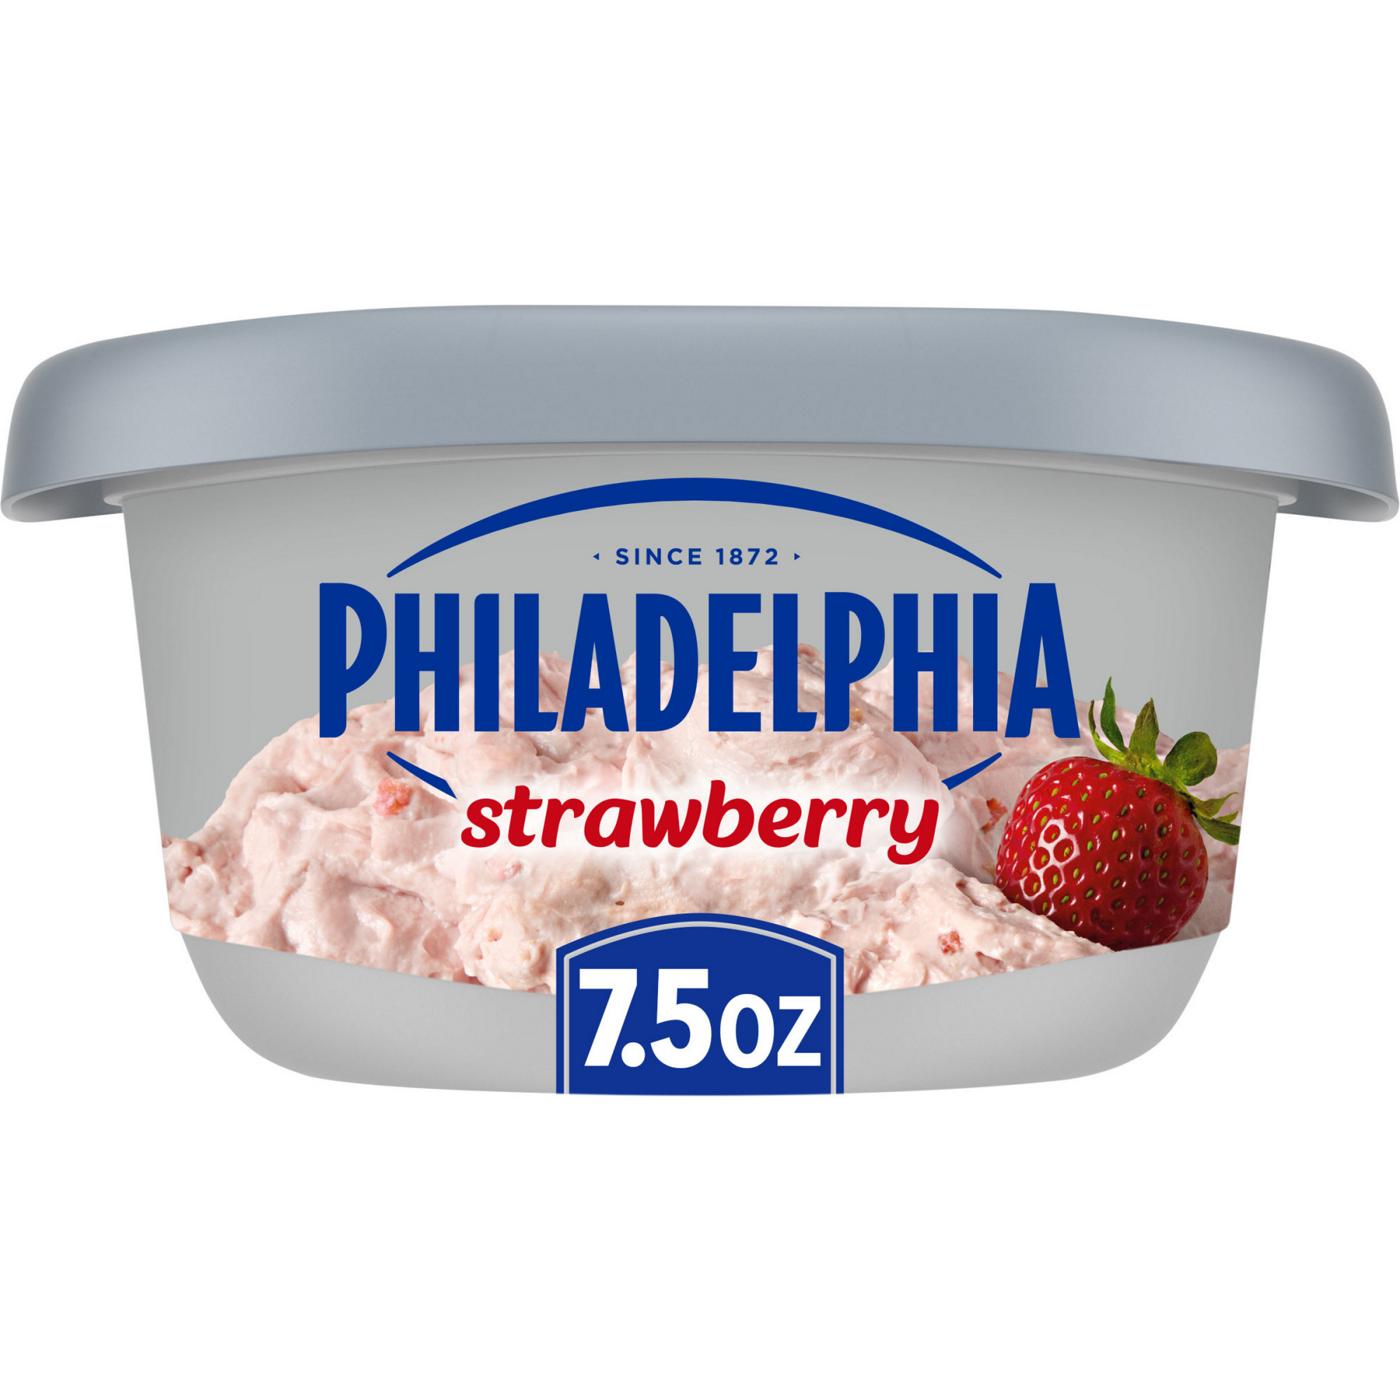 Philadelphia Strawberry Cream Cheese Spread; image 1 of 9